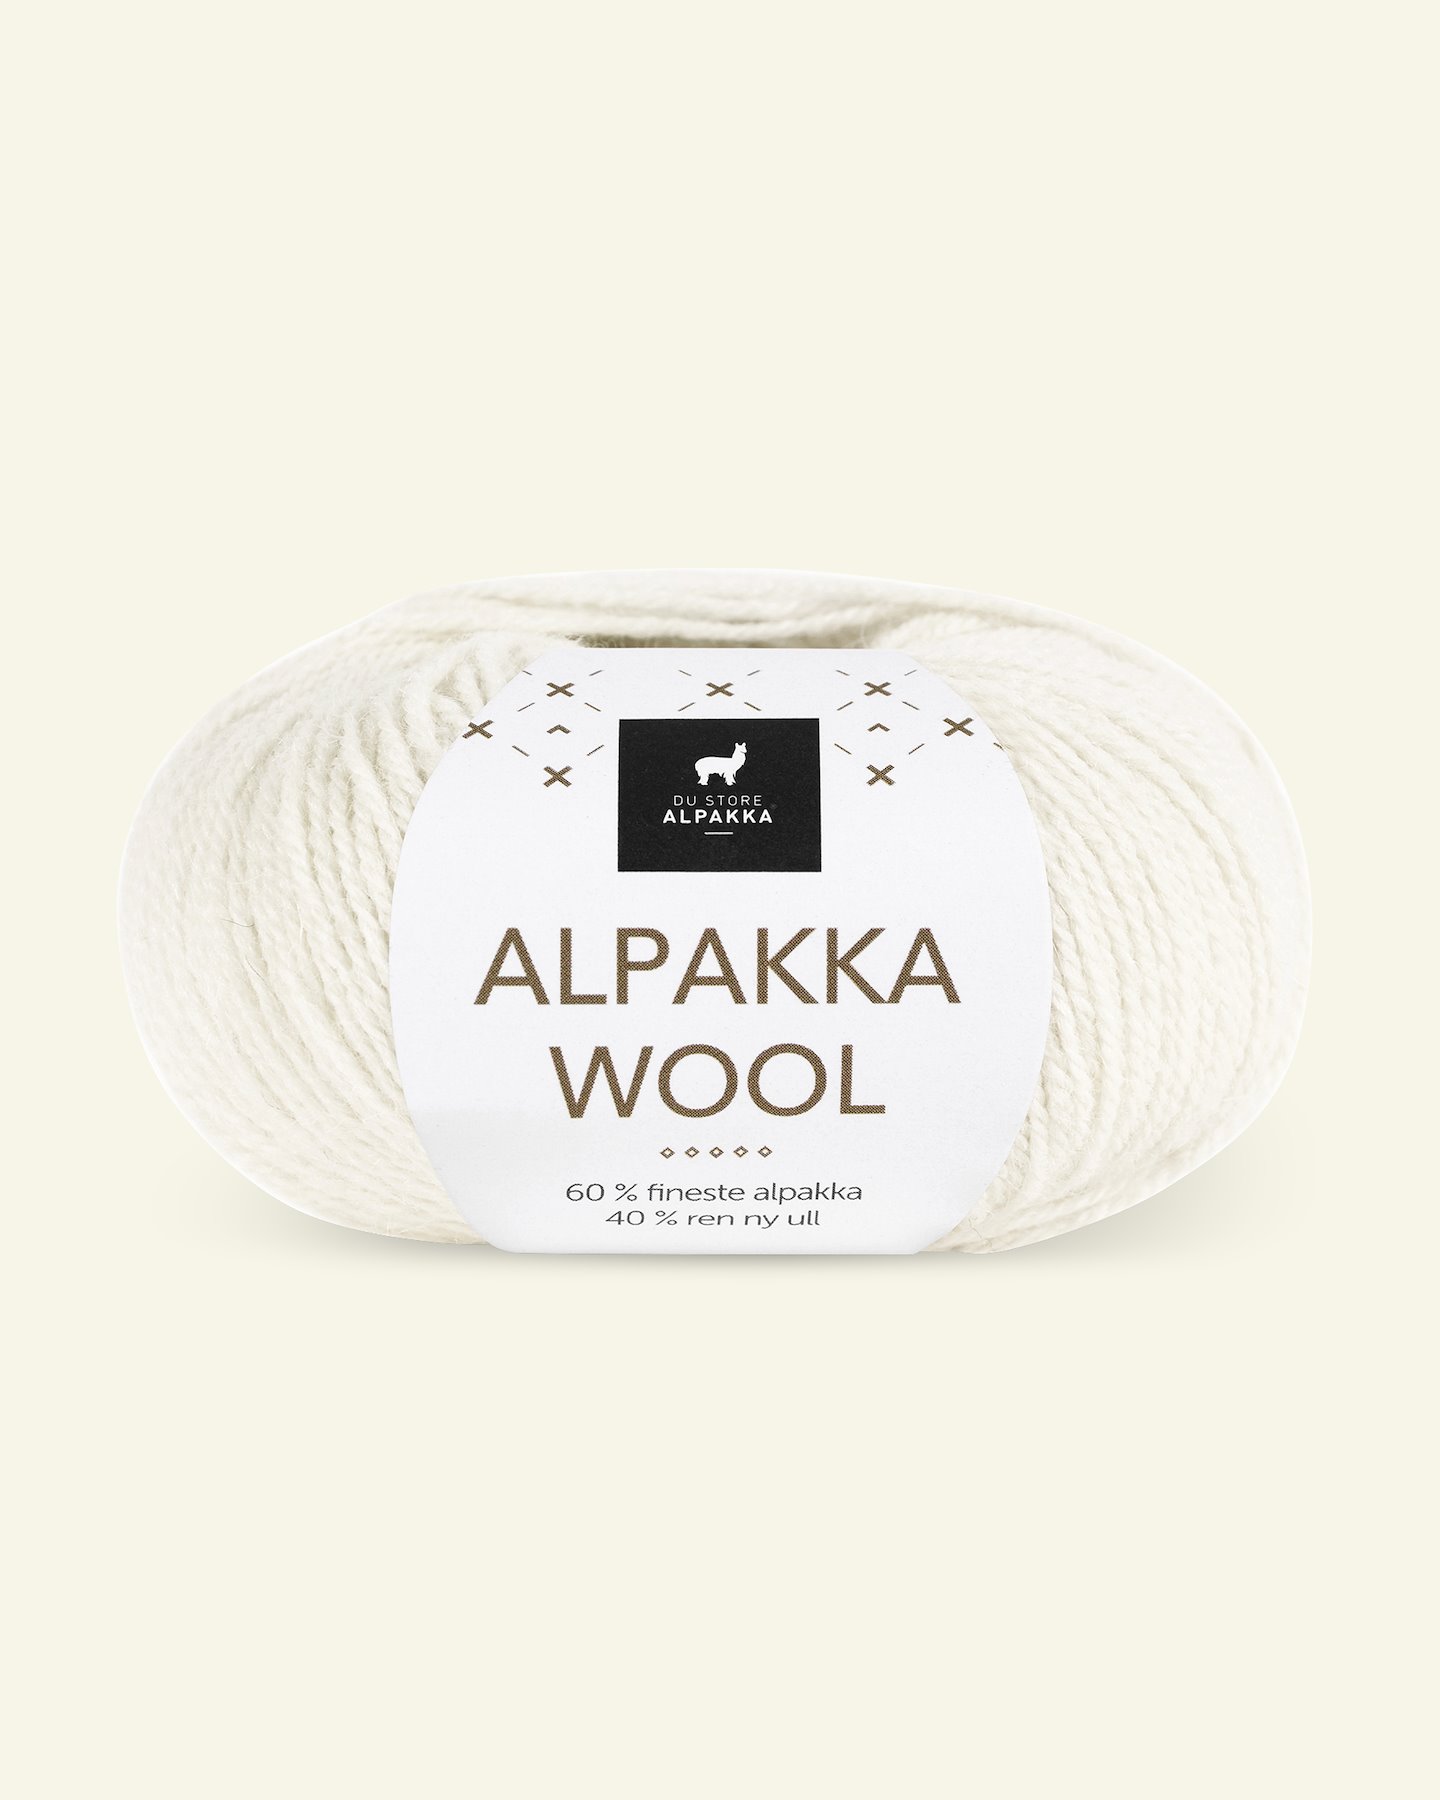 Du Store Alpakka, alpaca uldgarn "Alpakka Wool", hvid (533) 90000562_pack